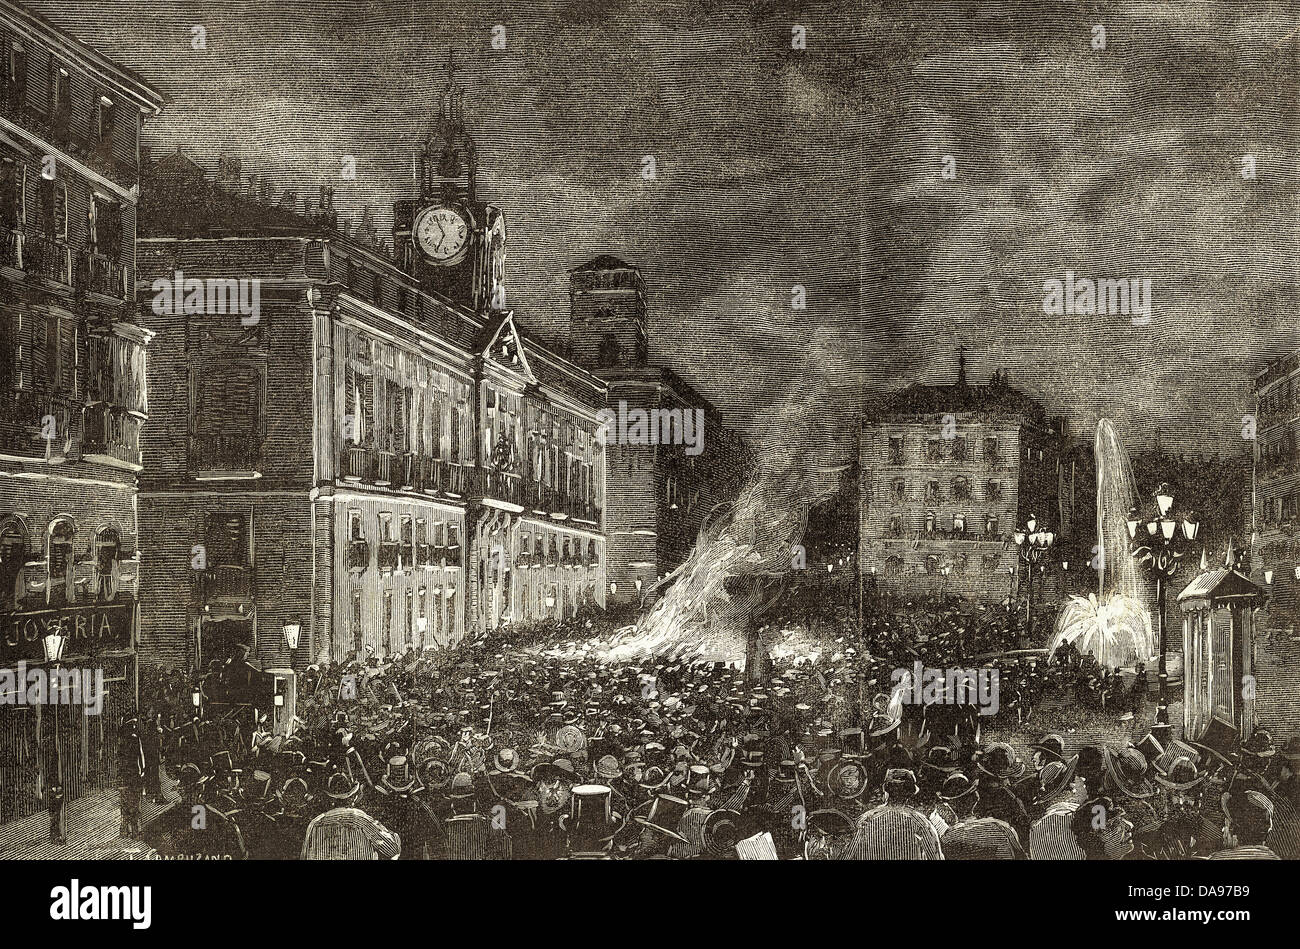 Spanien. Konflikt von den Karolinen. Patriotische Protest am Abend 4. August 1885 an der Puerta del Sol, Madrid. Gravur. Stockfoto